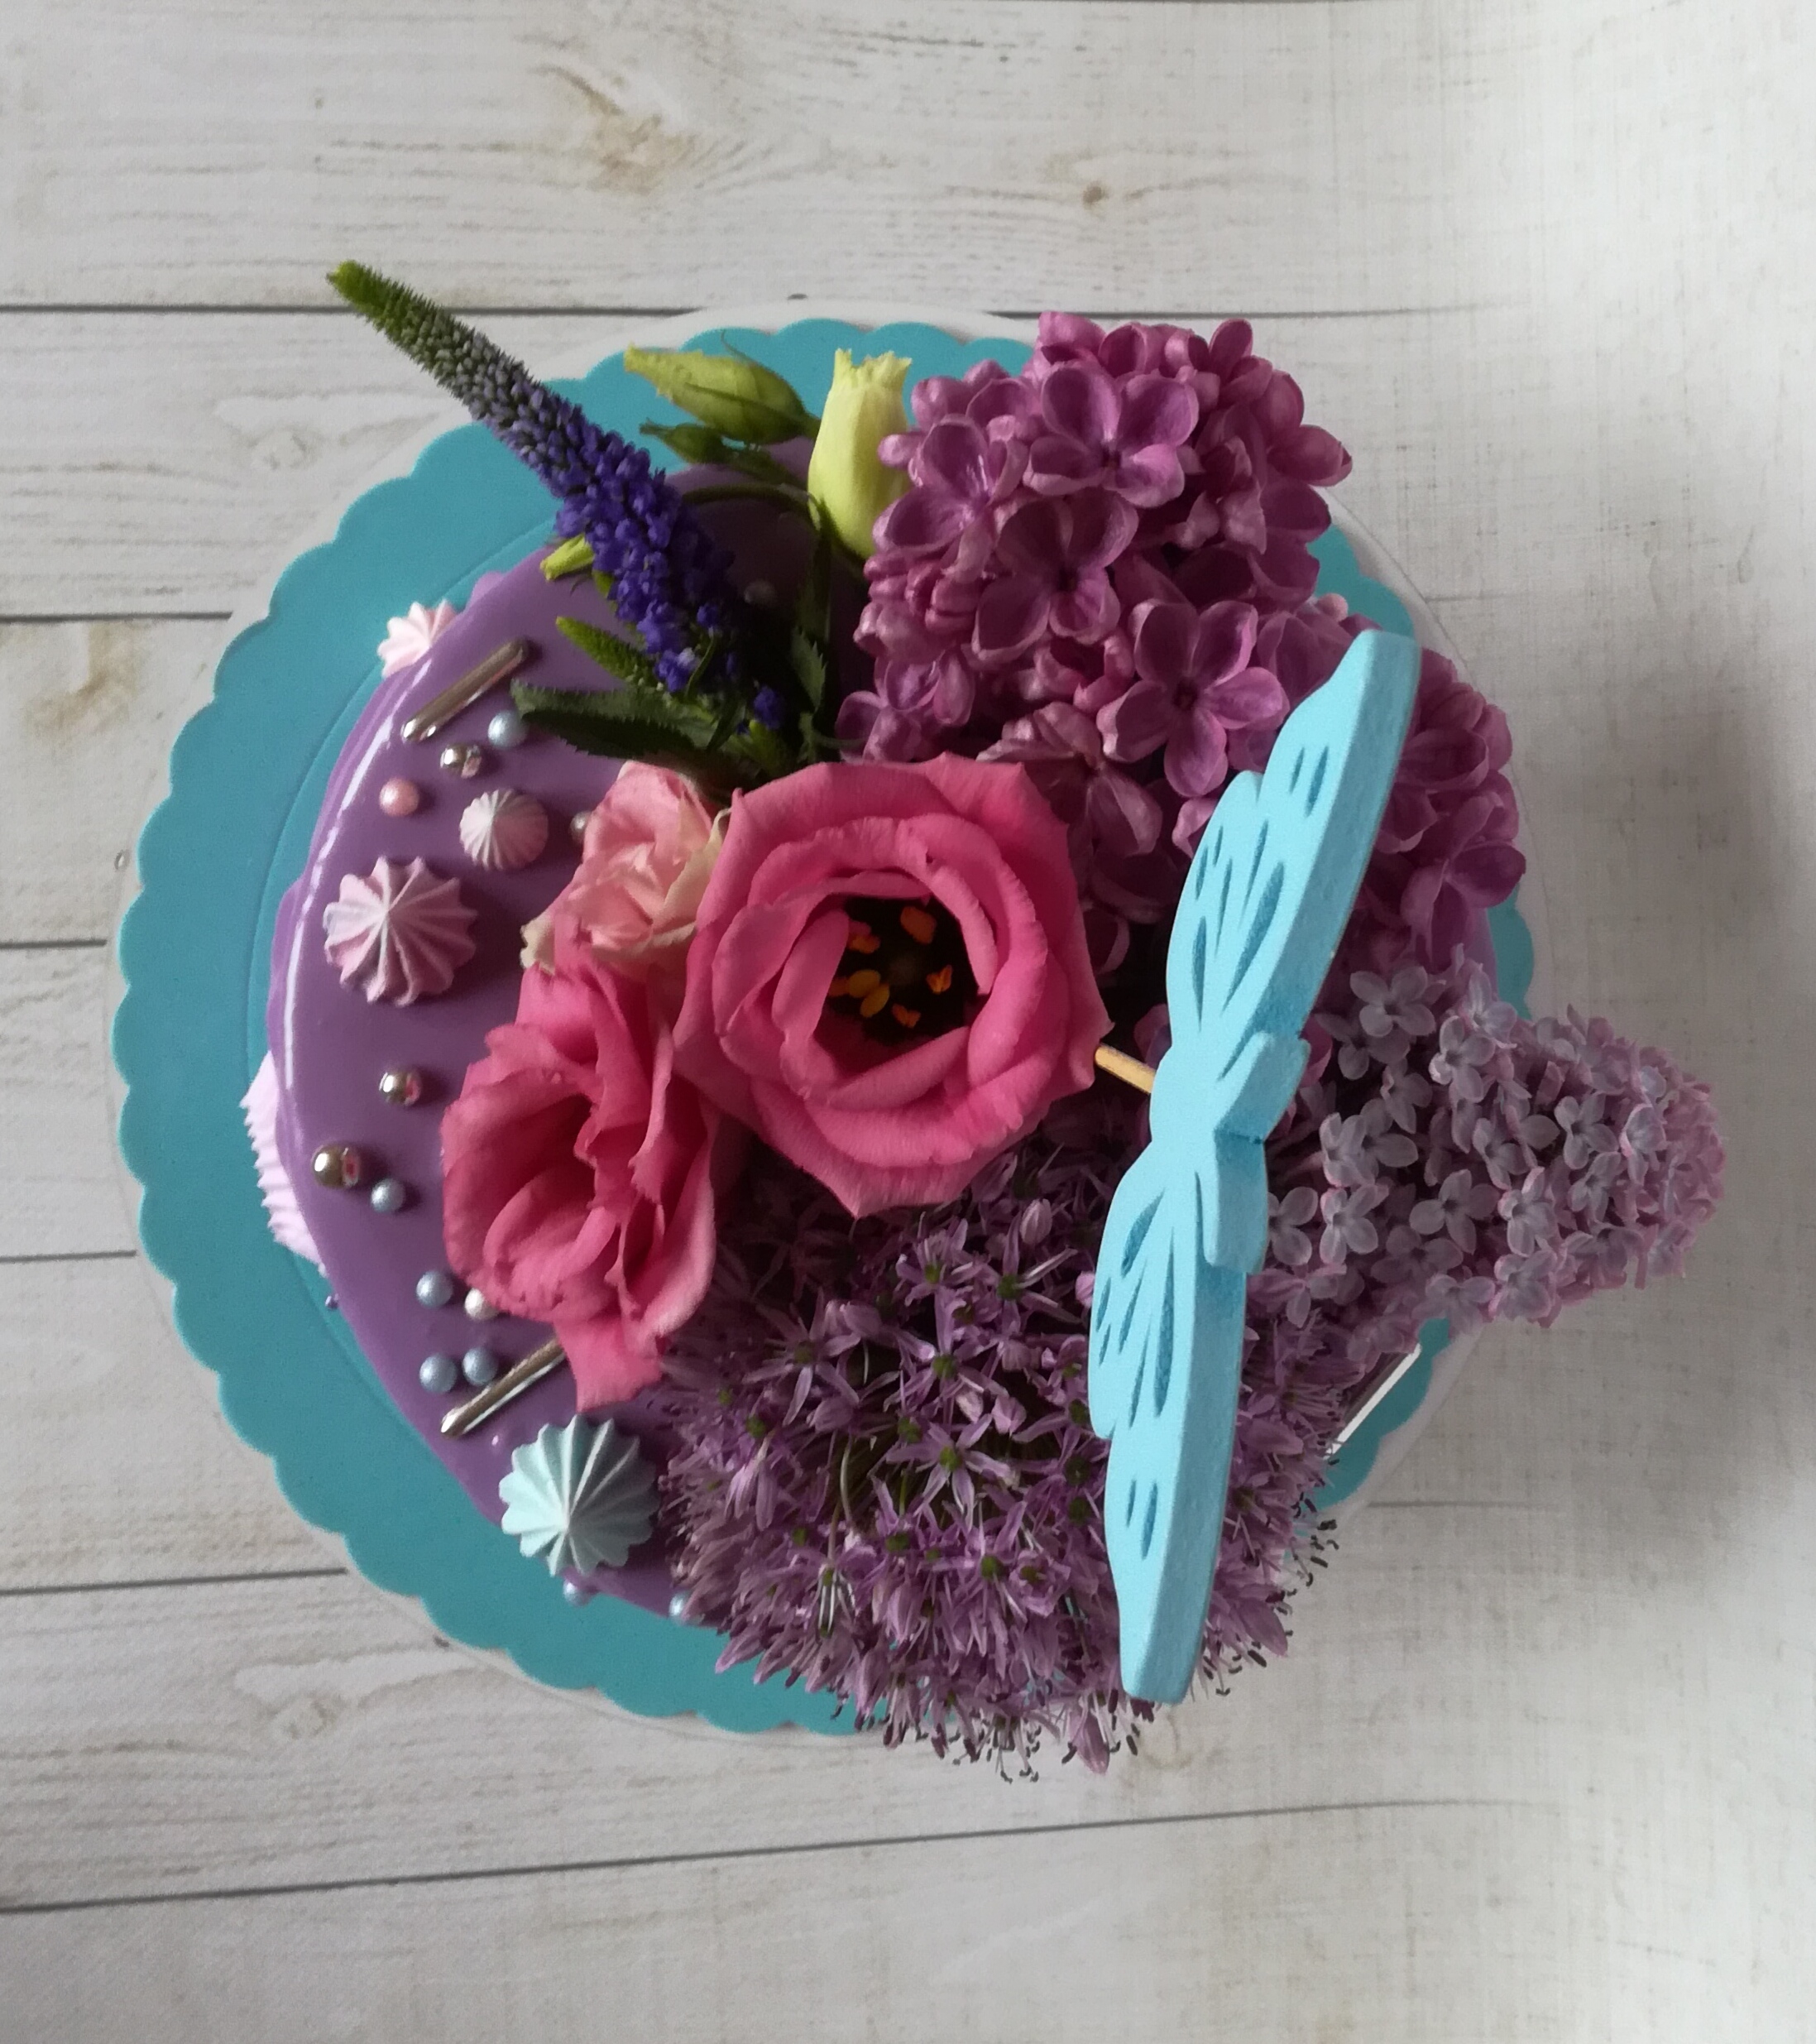 tort z żywymi kwiatami lublin,tort na zamówienie lublin,zufi studio tortów lublin